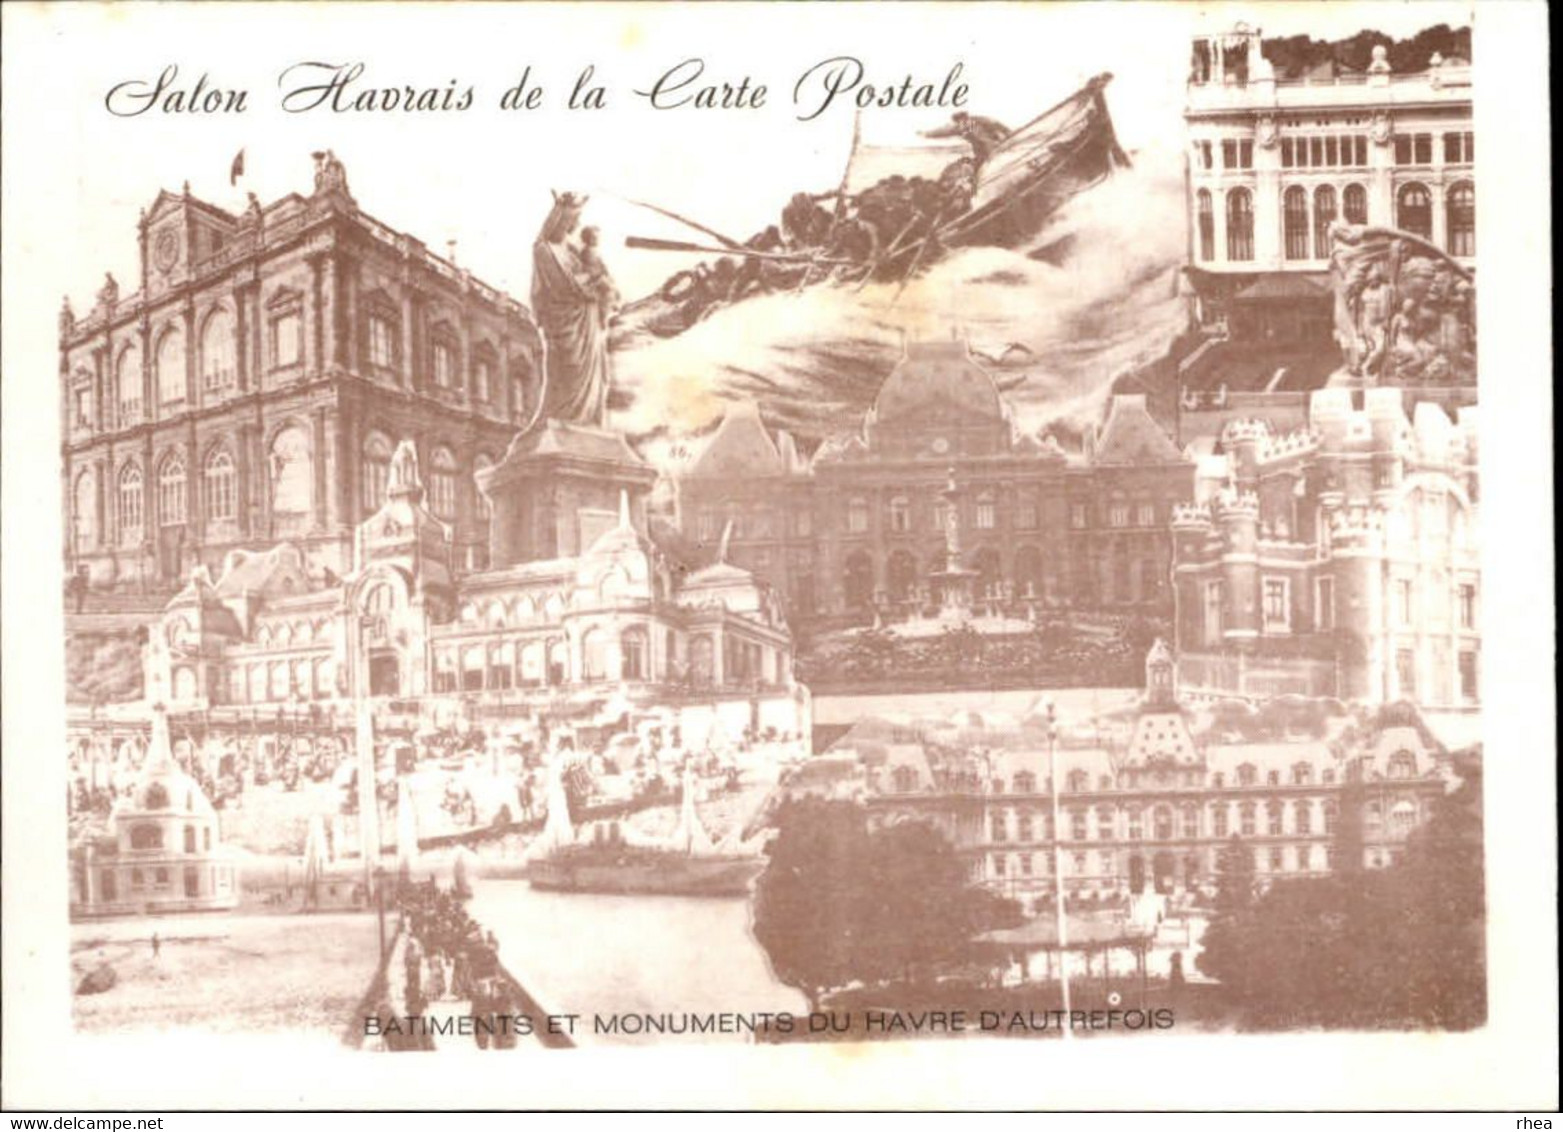 SALONS DE COLLECTIONS - Salon De Cartes Postales - LE HAVRE - 1894 - Bourses & Salons De Collections